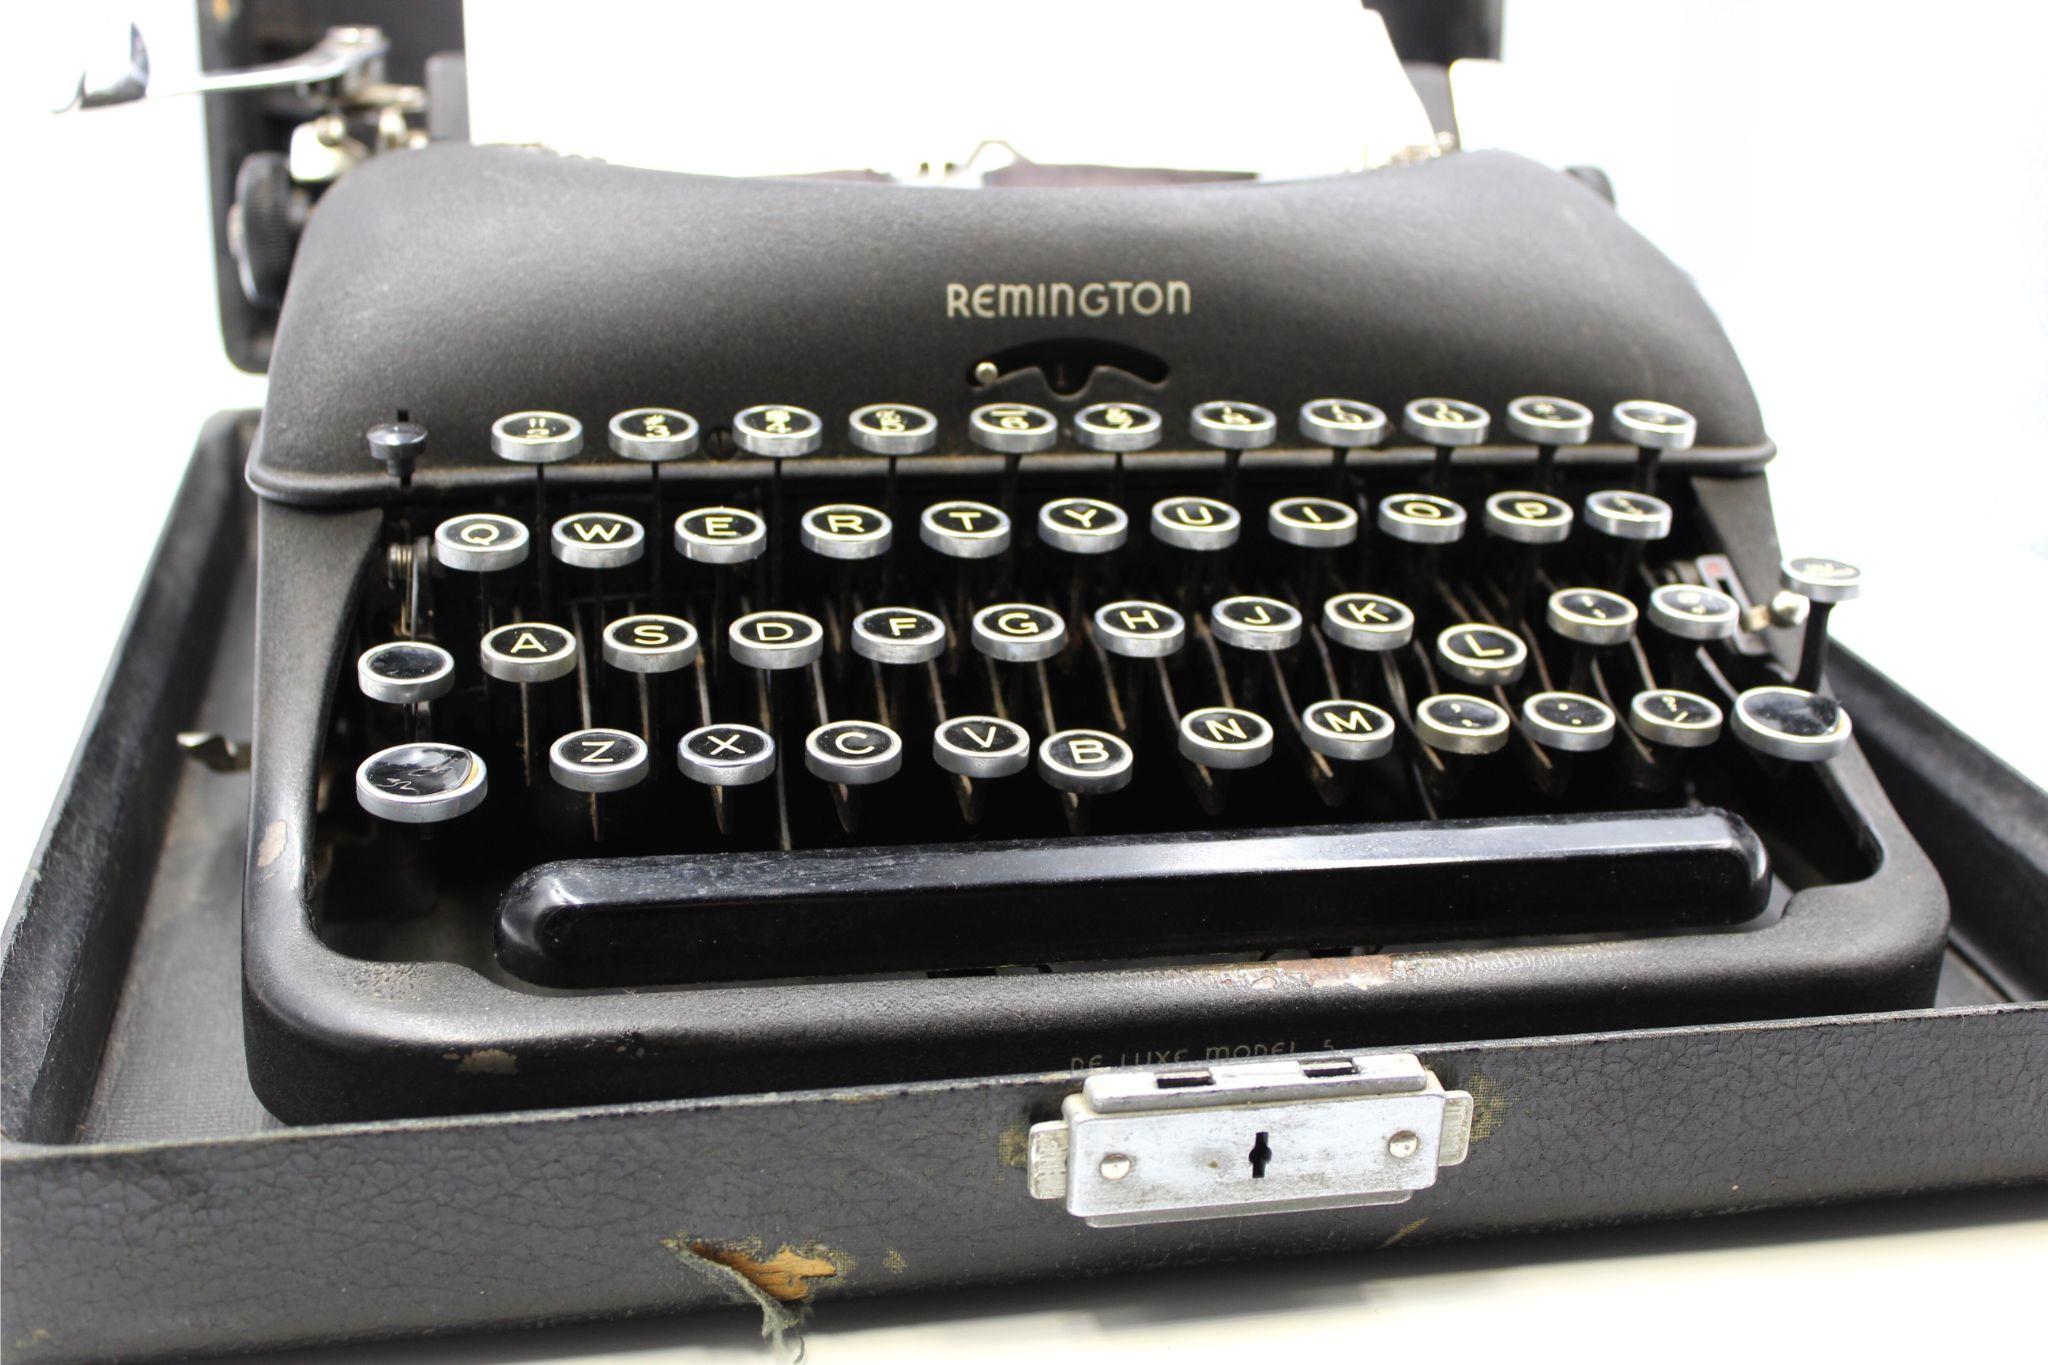 remington rand typewriter value